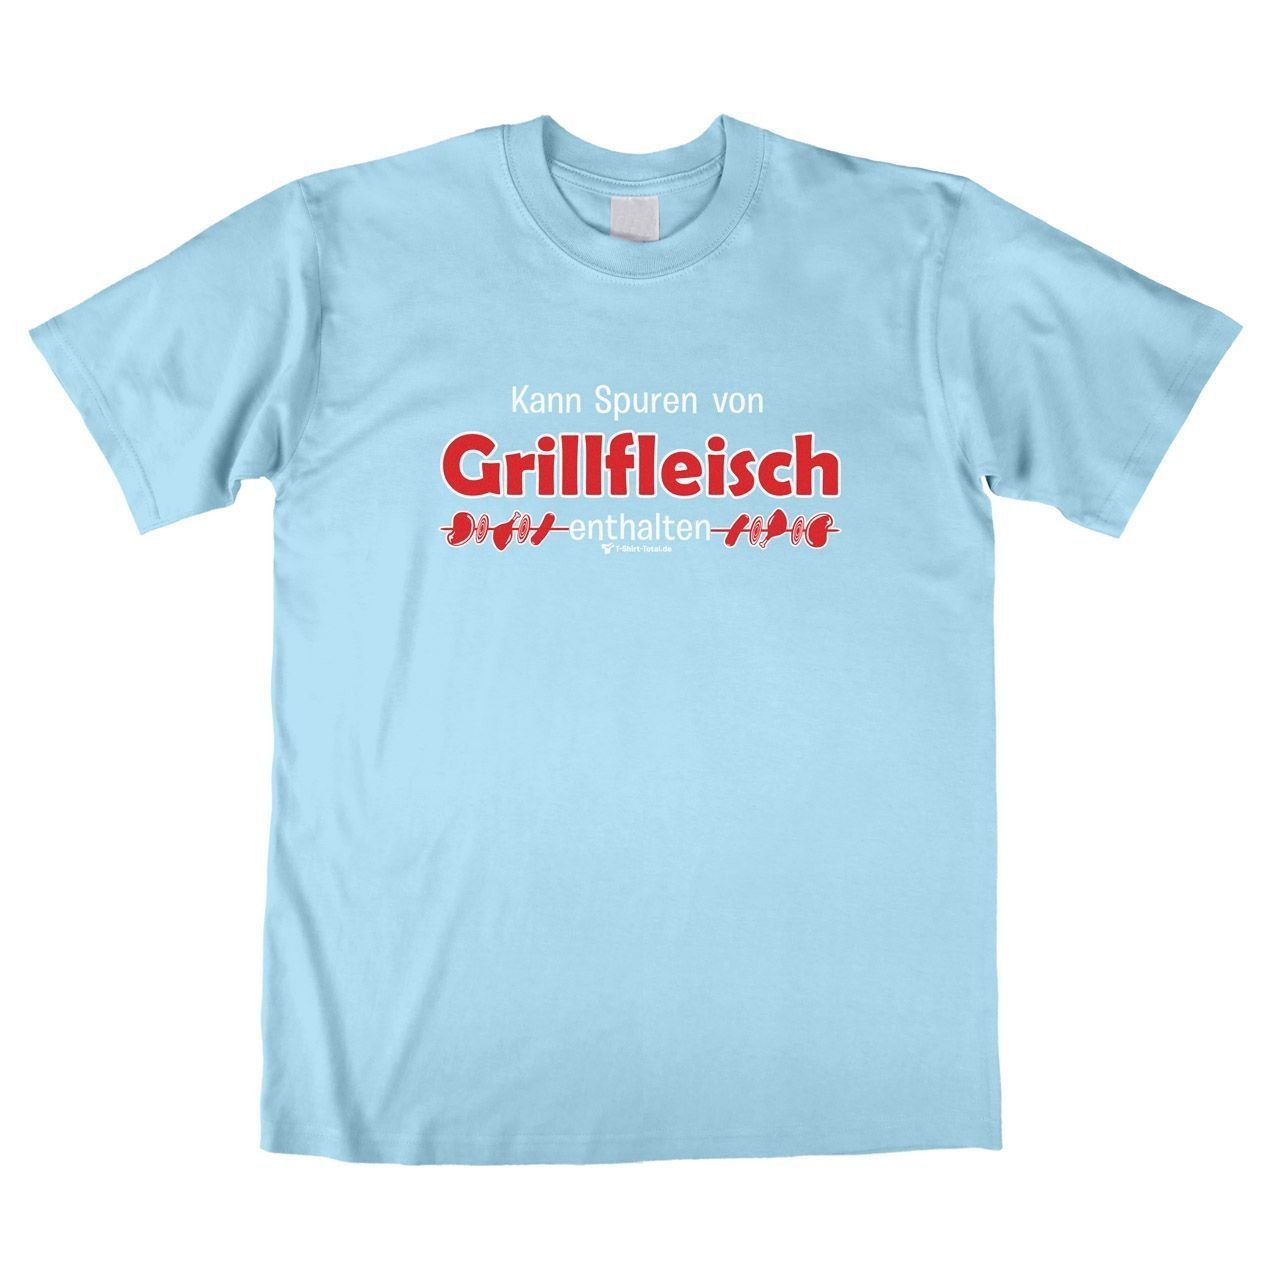 Spuren von Grillfleisch Unisex T-Shirt hellblau Extra Large